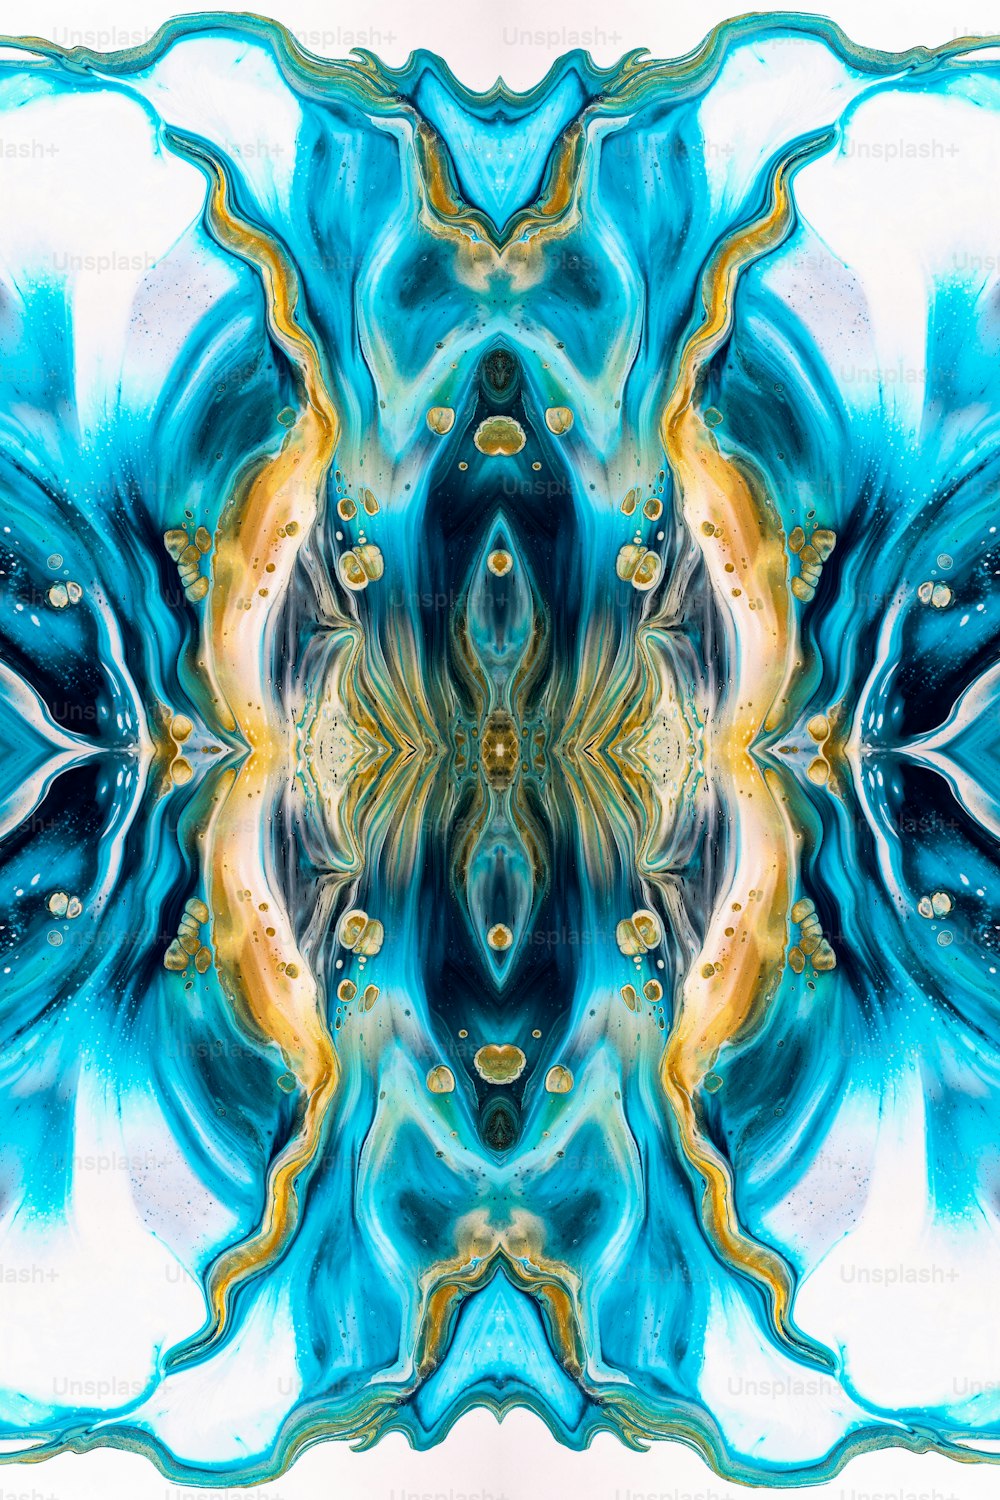 Una imagen abstracta de una flor azul y amarilla